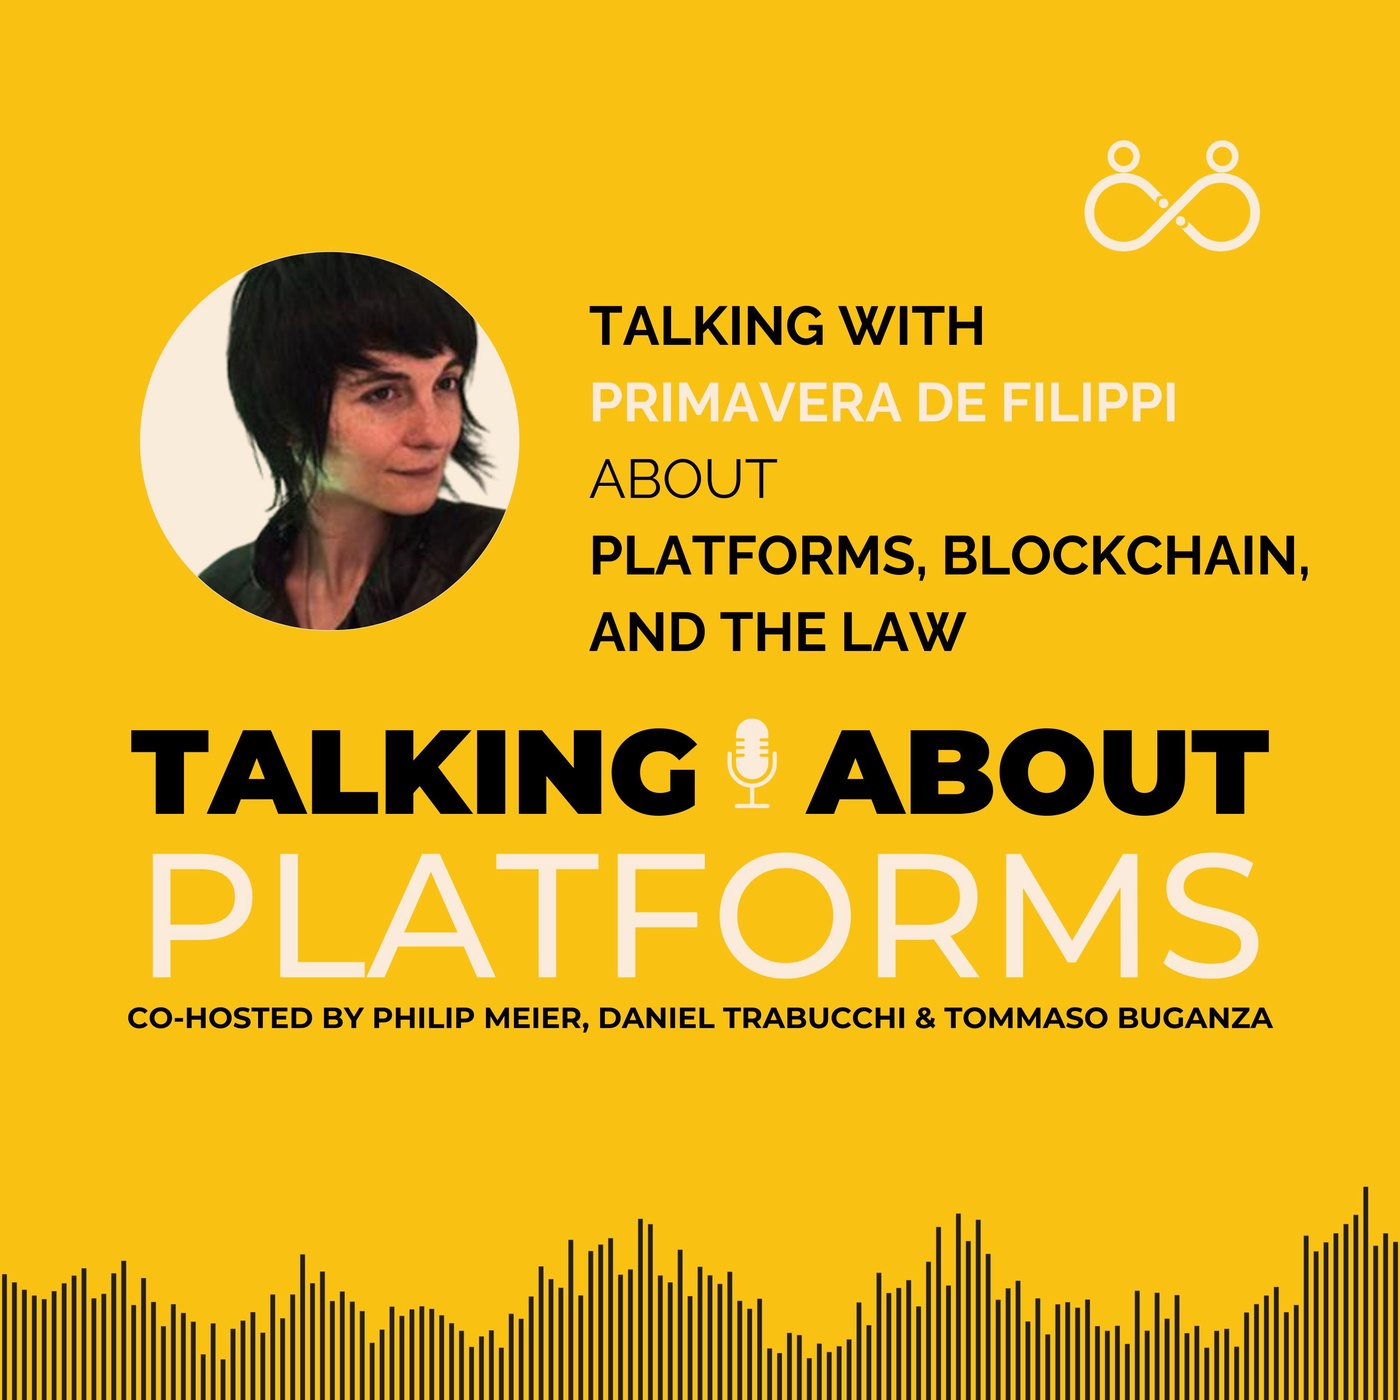 Platforms, blockchain, and the law with Primavera De Filippi